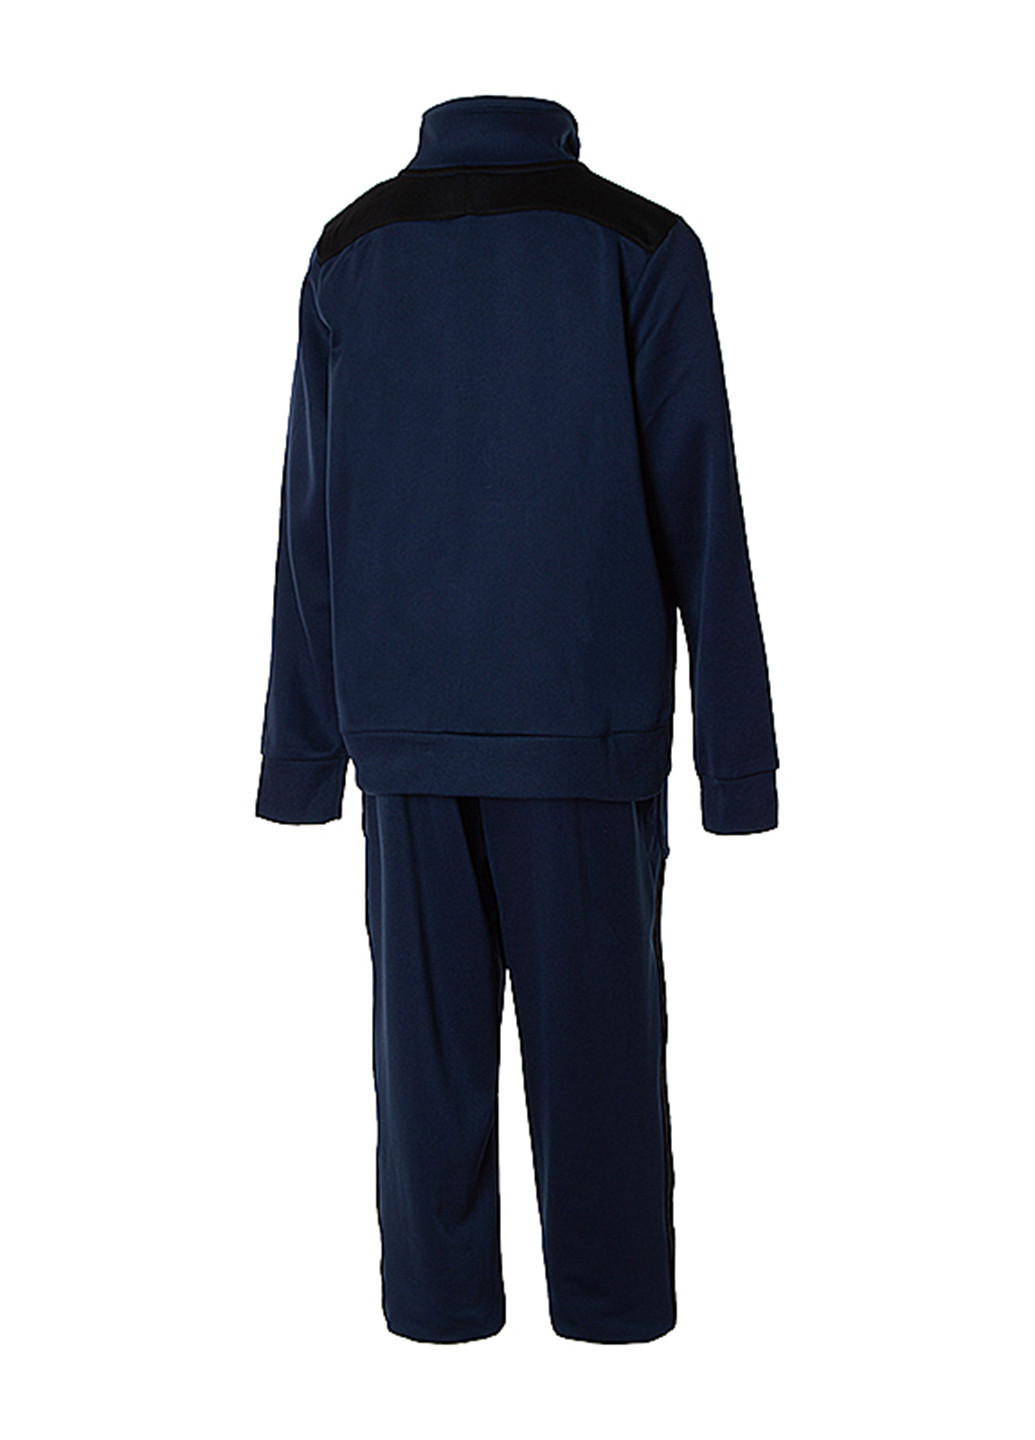 Темно-синий демисезонный костюм (олимпийка, брюки) брючный Nike Nike U NSW AIR TRACKSUIT